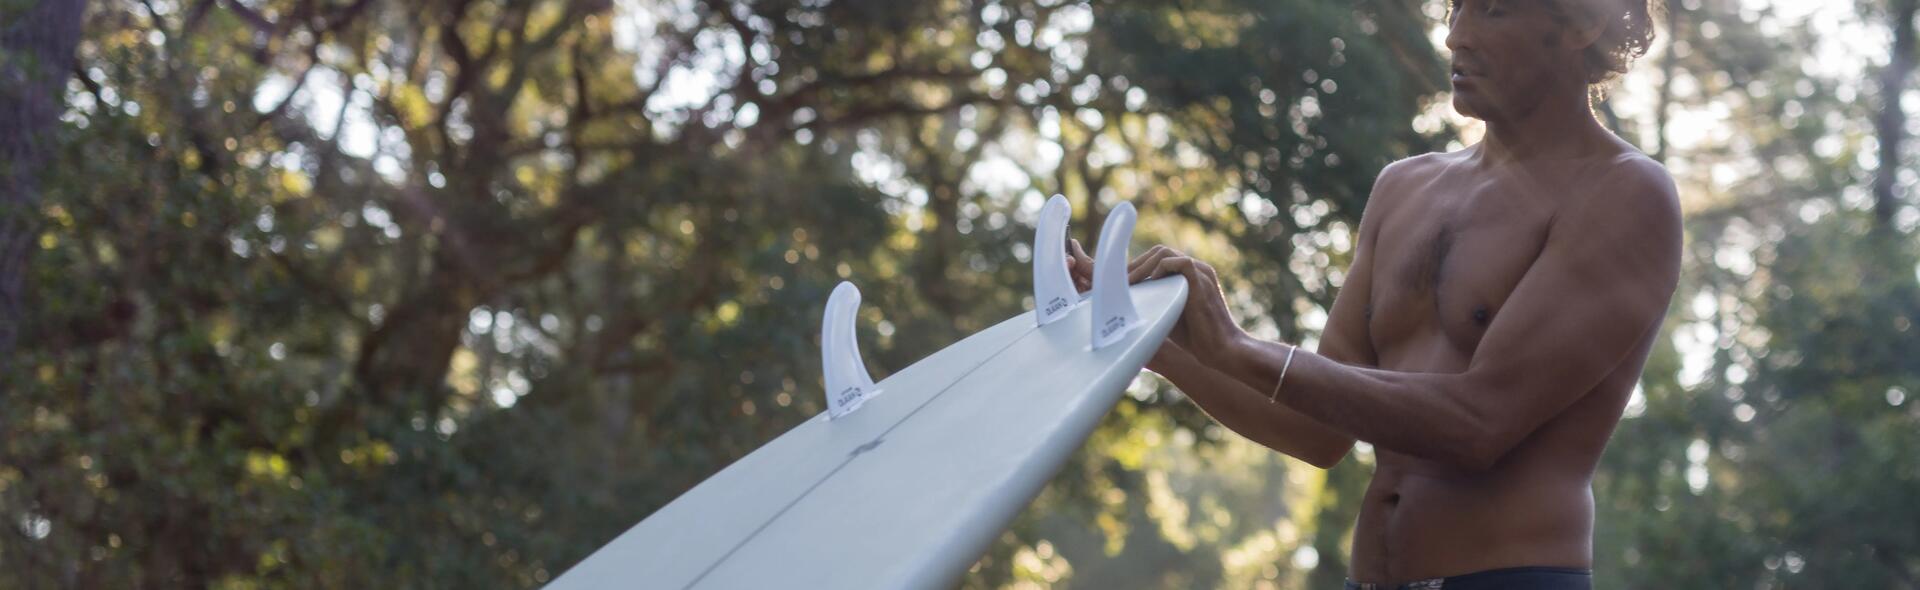 Die Reinigung des Surfboards: Anleitung